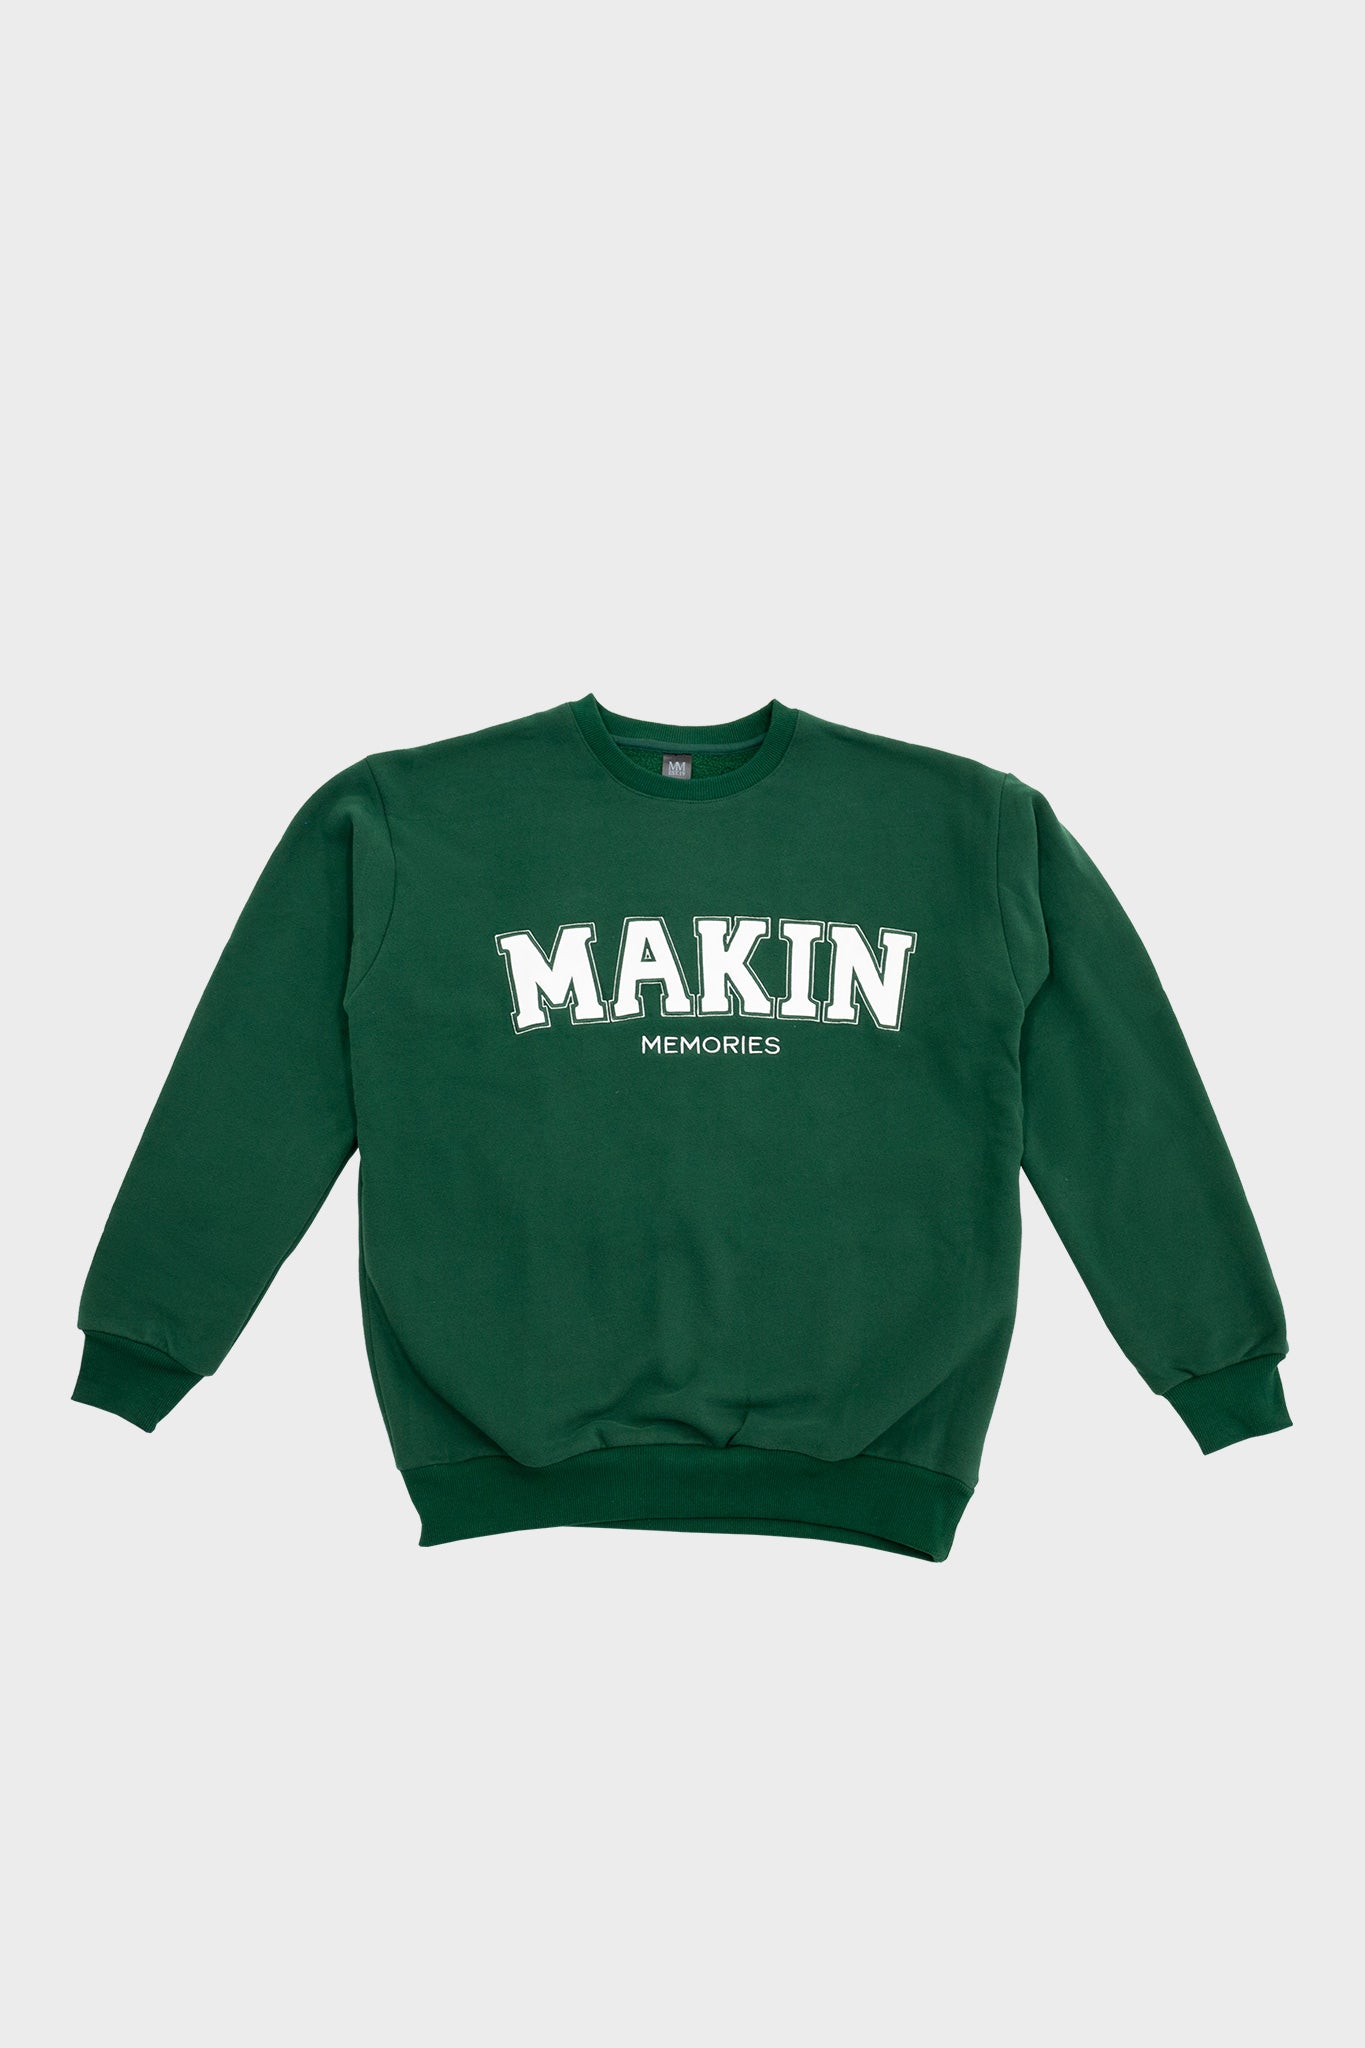 College Sweatshirt in Green, Makin Memories